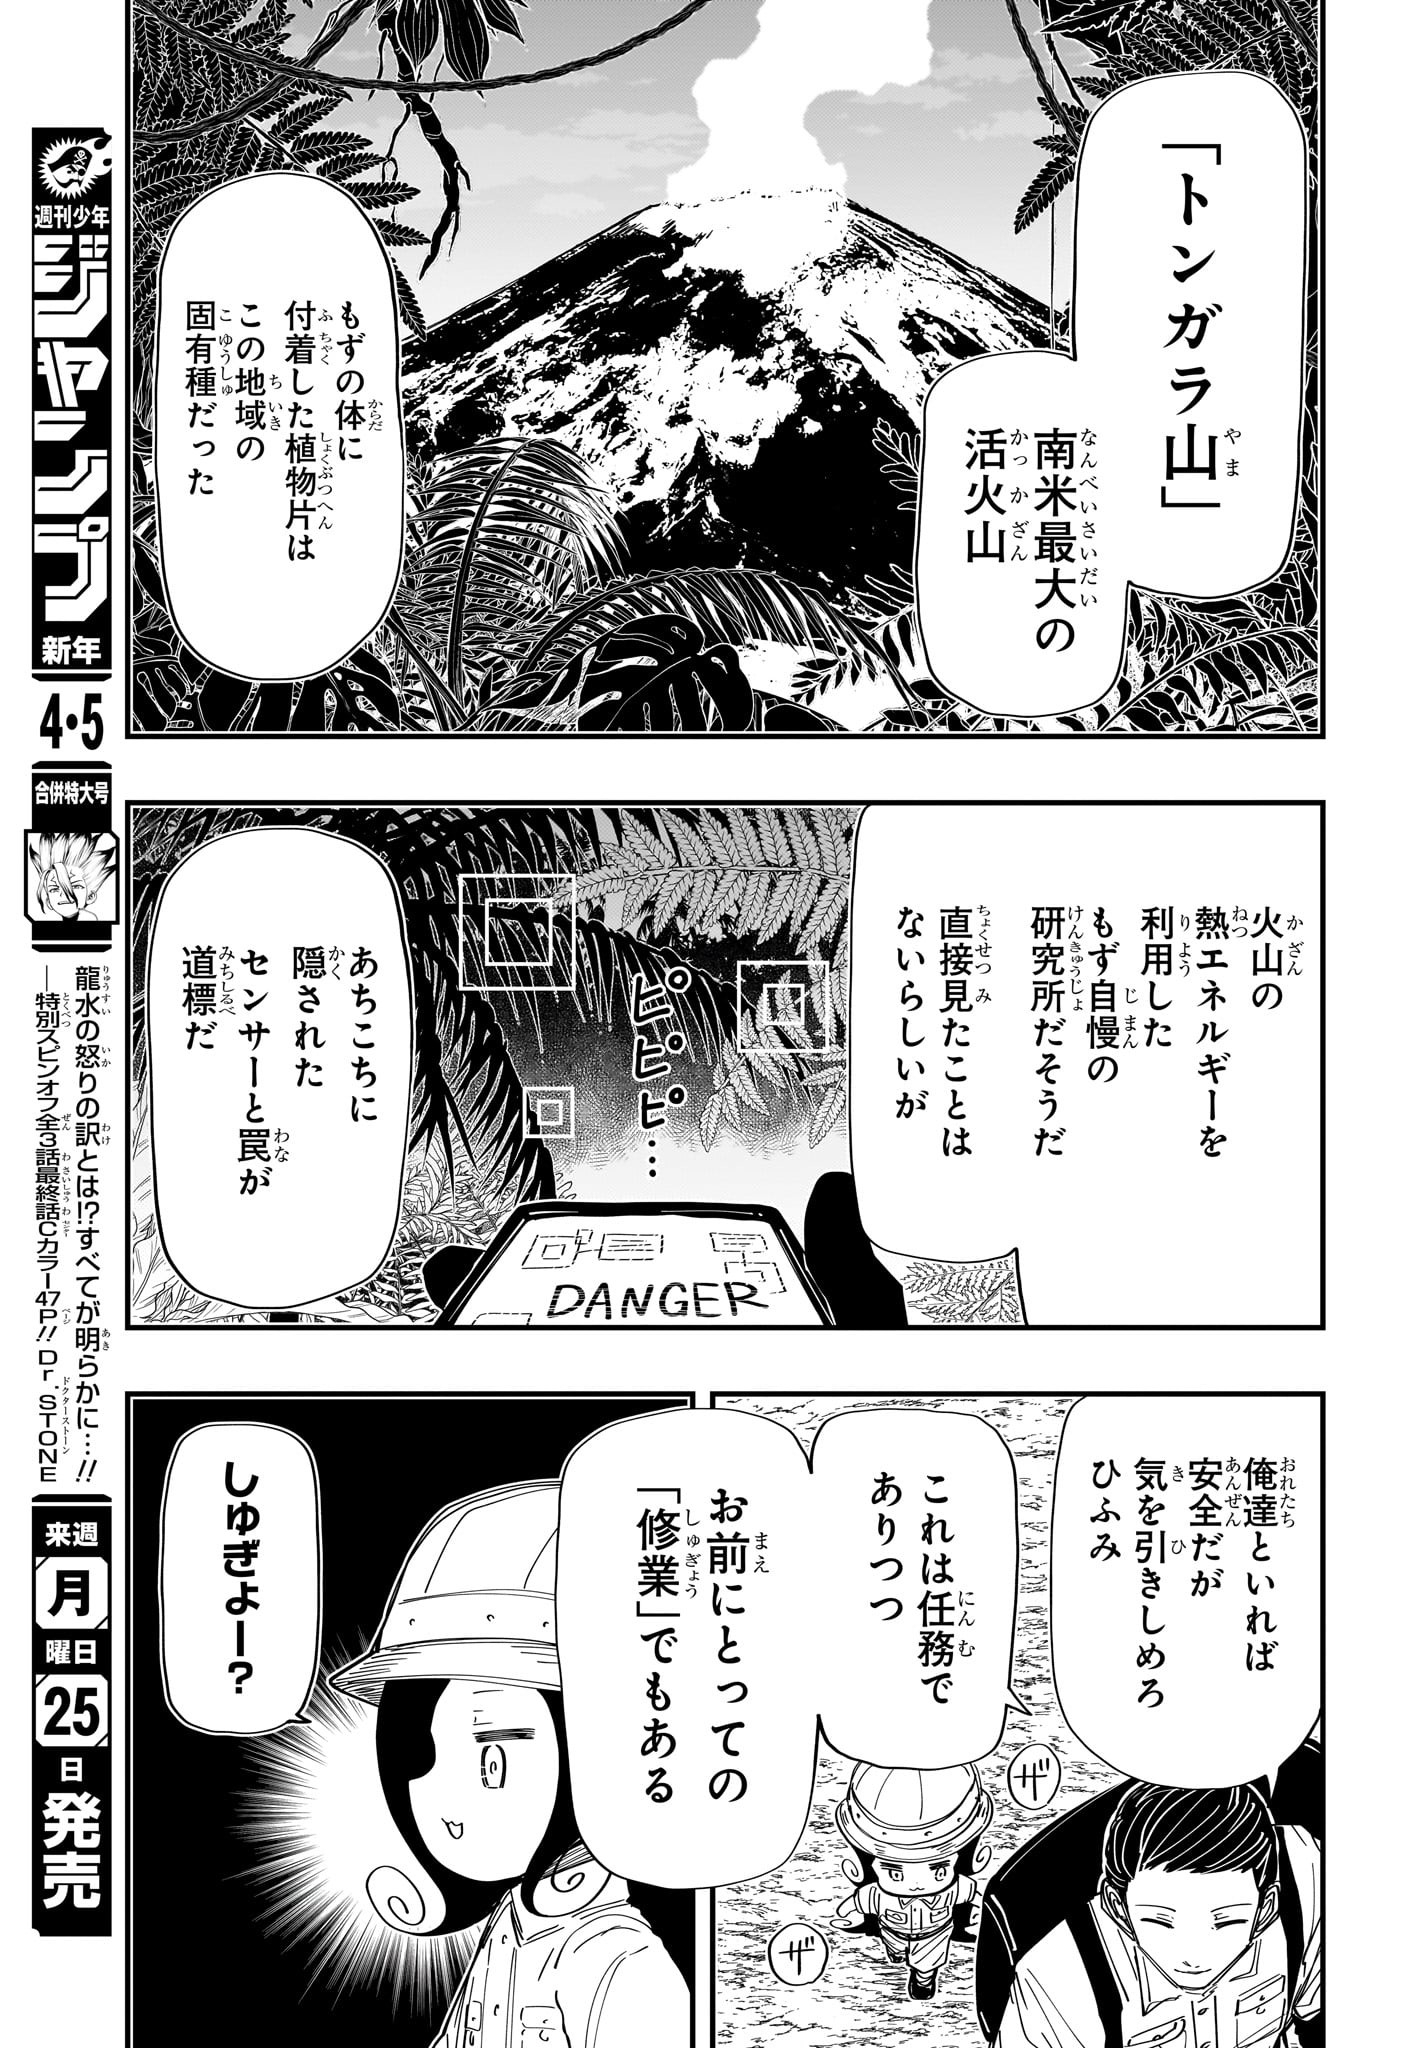 Yozakura-san Chi no Daisakusen - Chapter 207 - Page 3